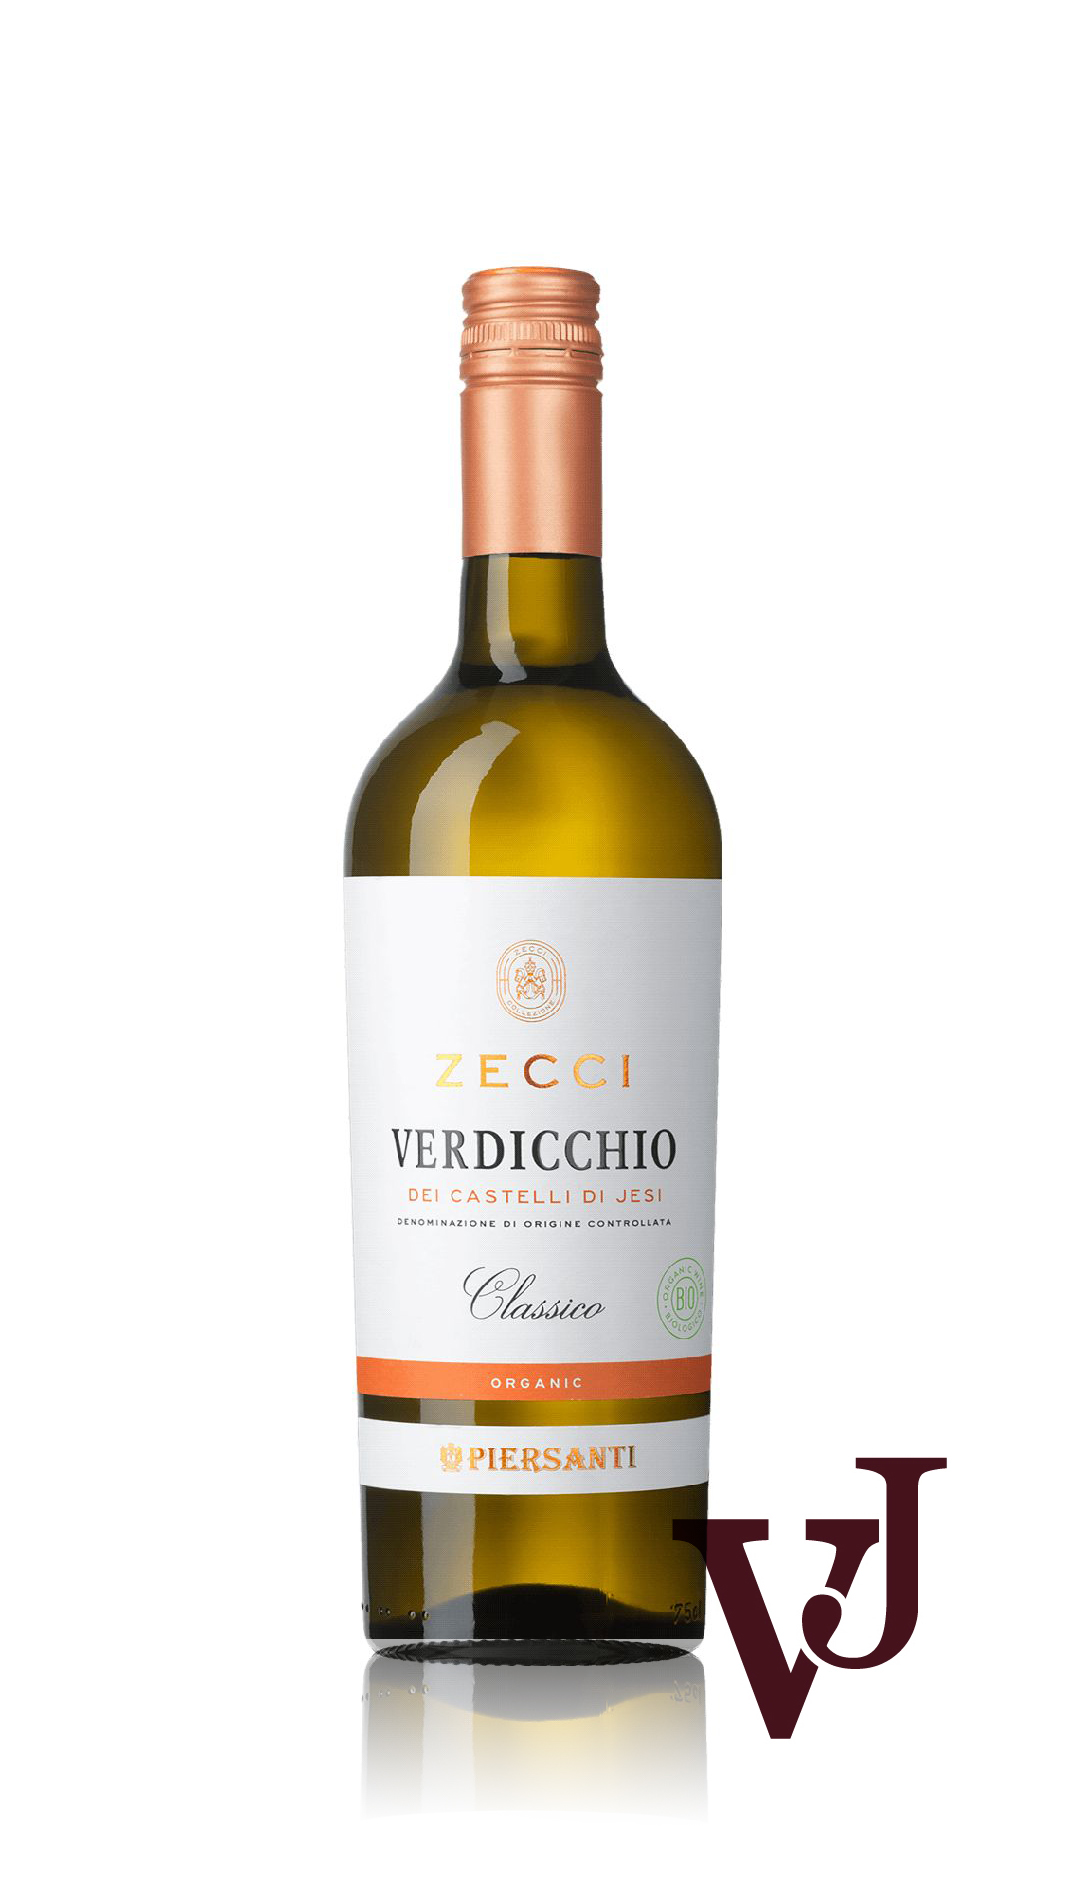 Vitt Vin - Zecci Classico artikel nummer 247801 från producenten Piersanti från området Italien